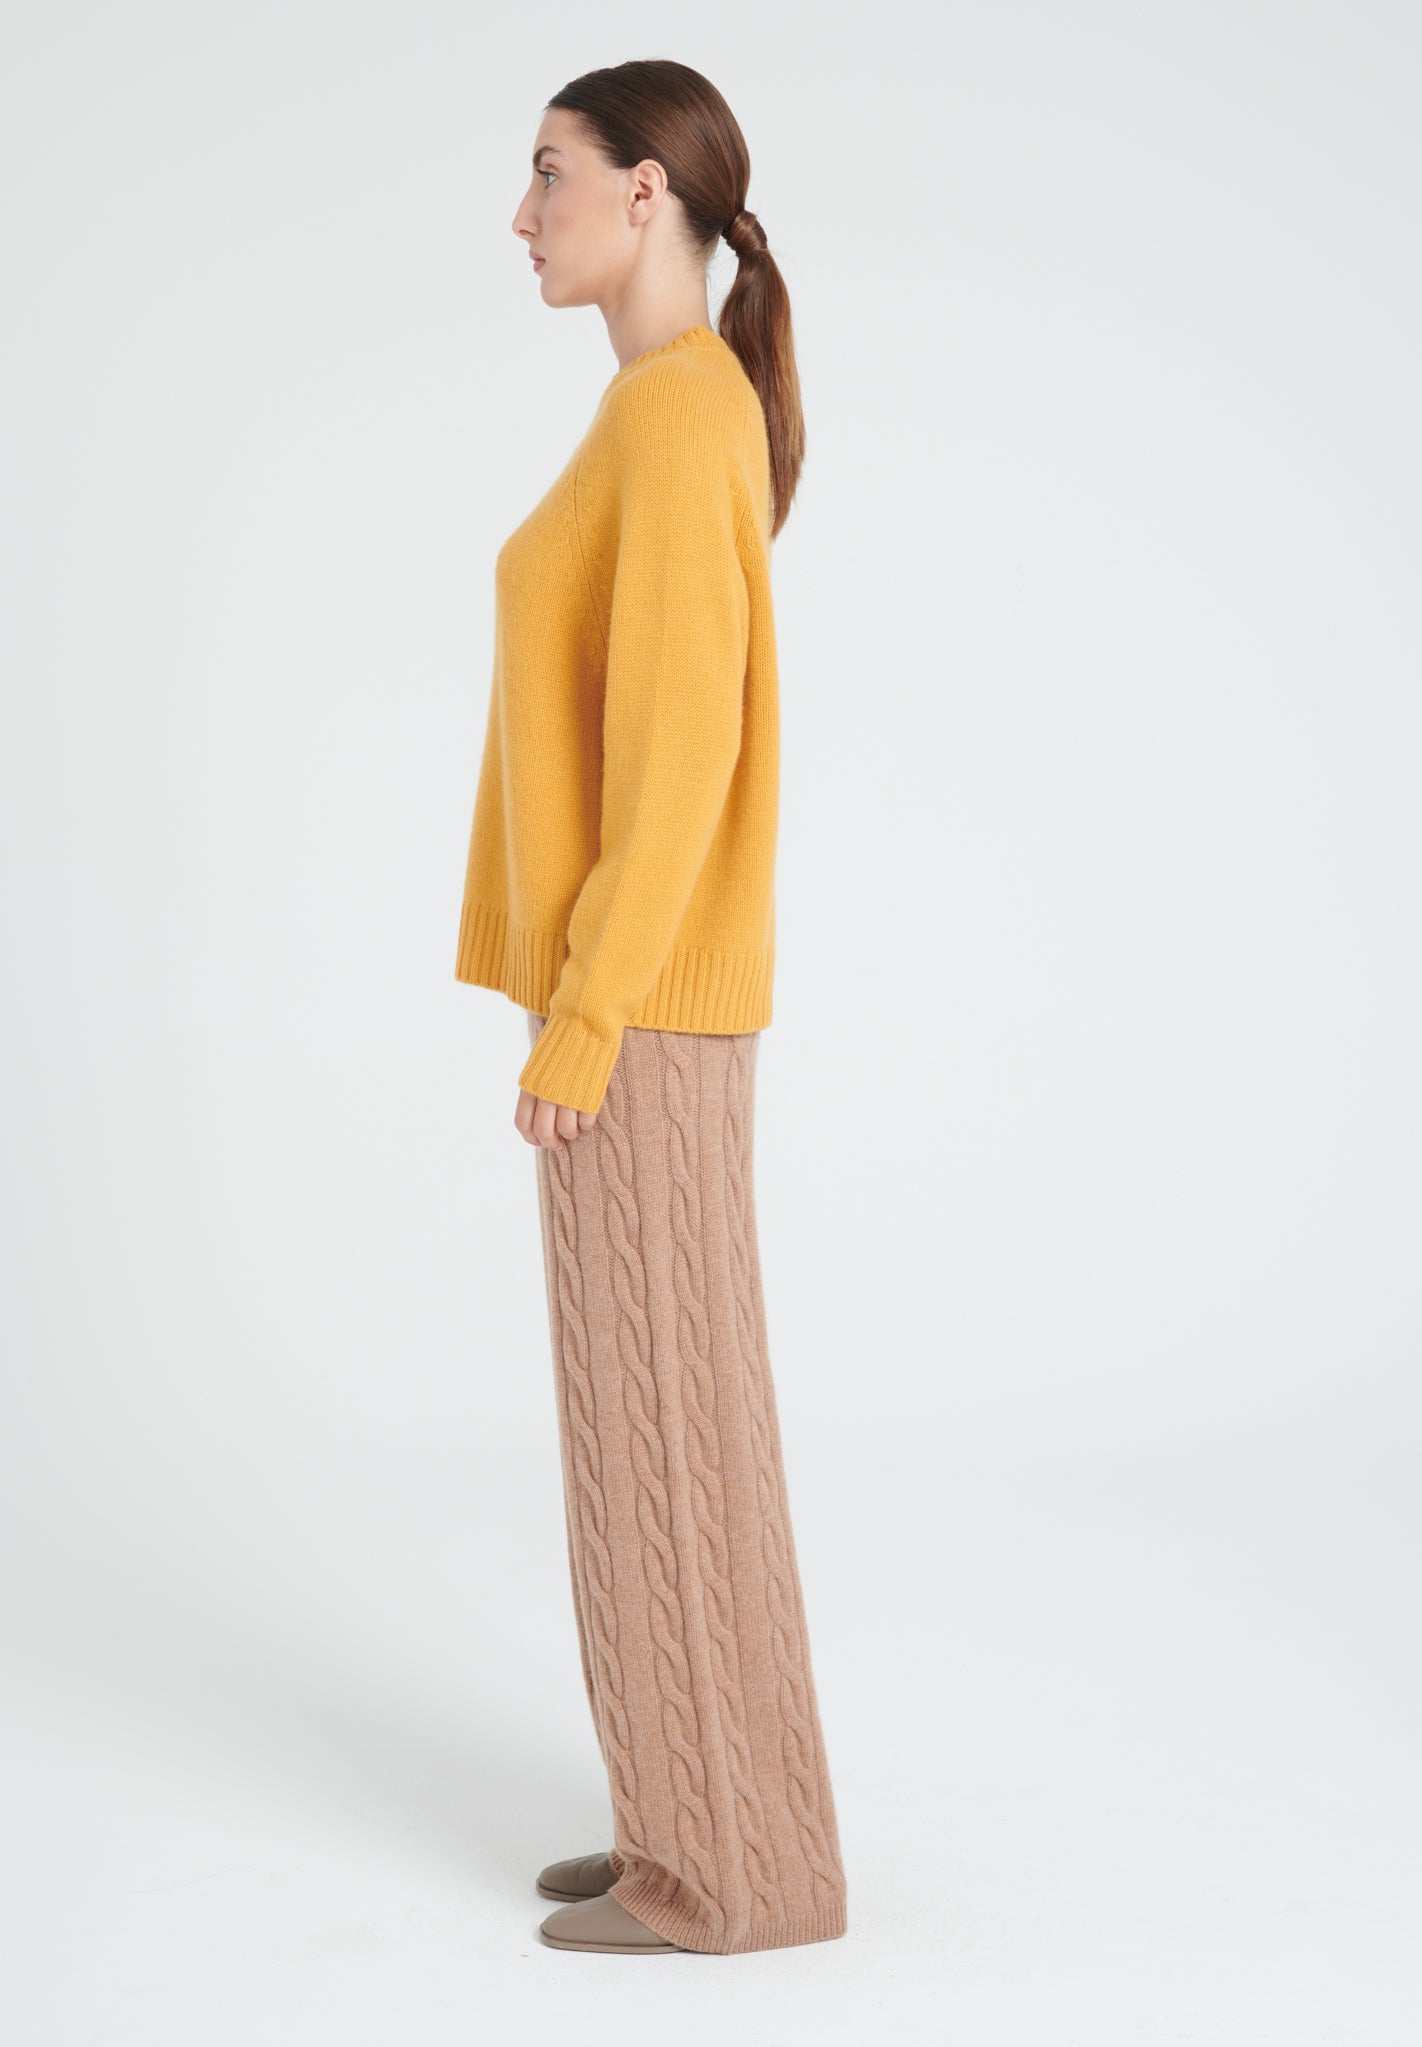 ZAYA 7 Round neck sweater with raglan sleeves in mustard yellow 6-thread cashmere